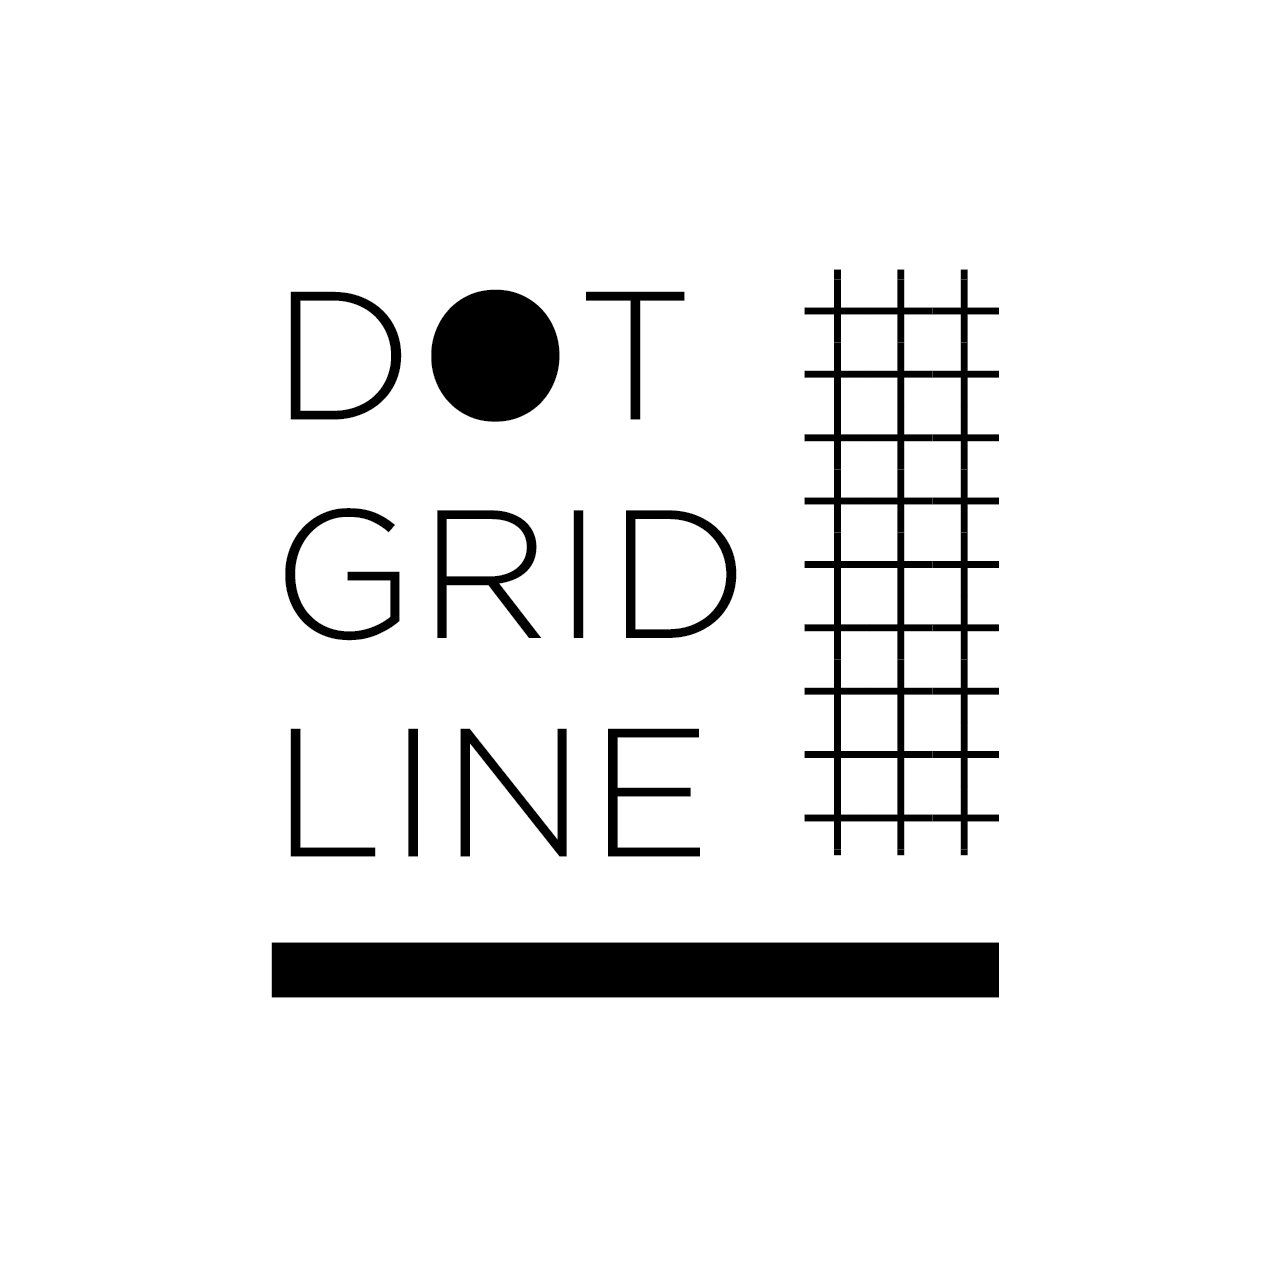 Dot Grid Line